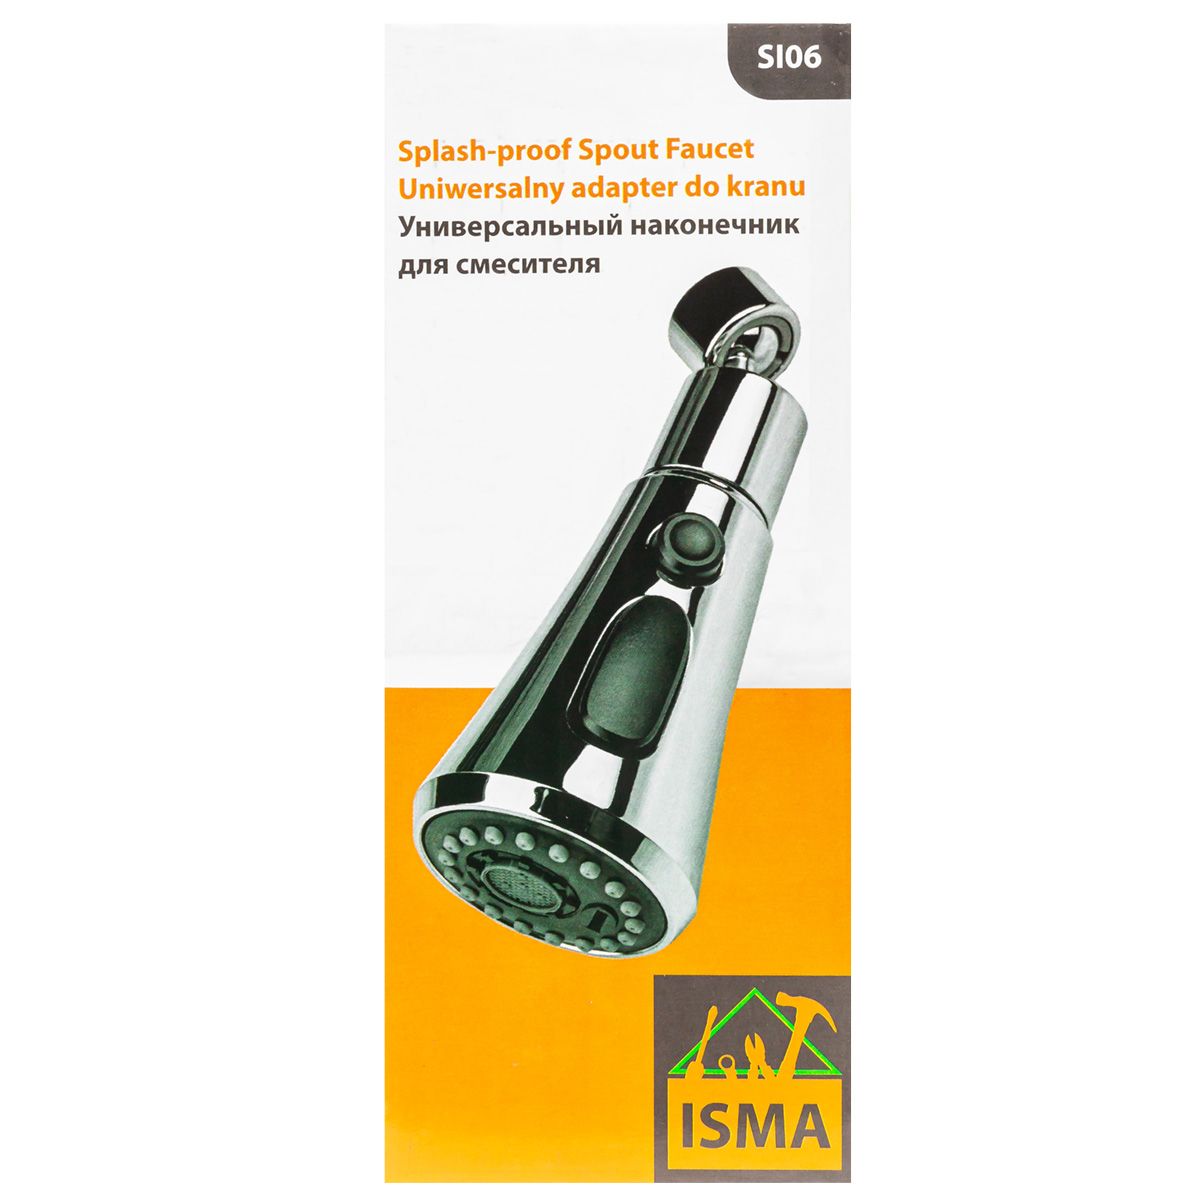 Универсальный наконечник для смесителя  ISMA ISMA-SI06